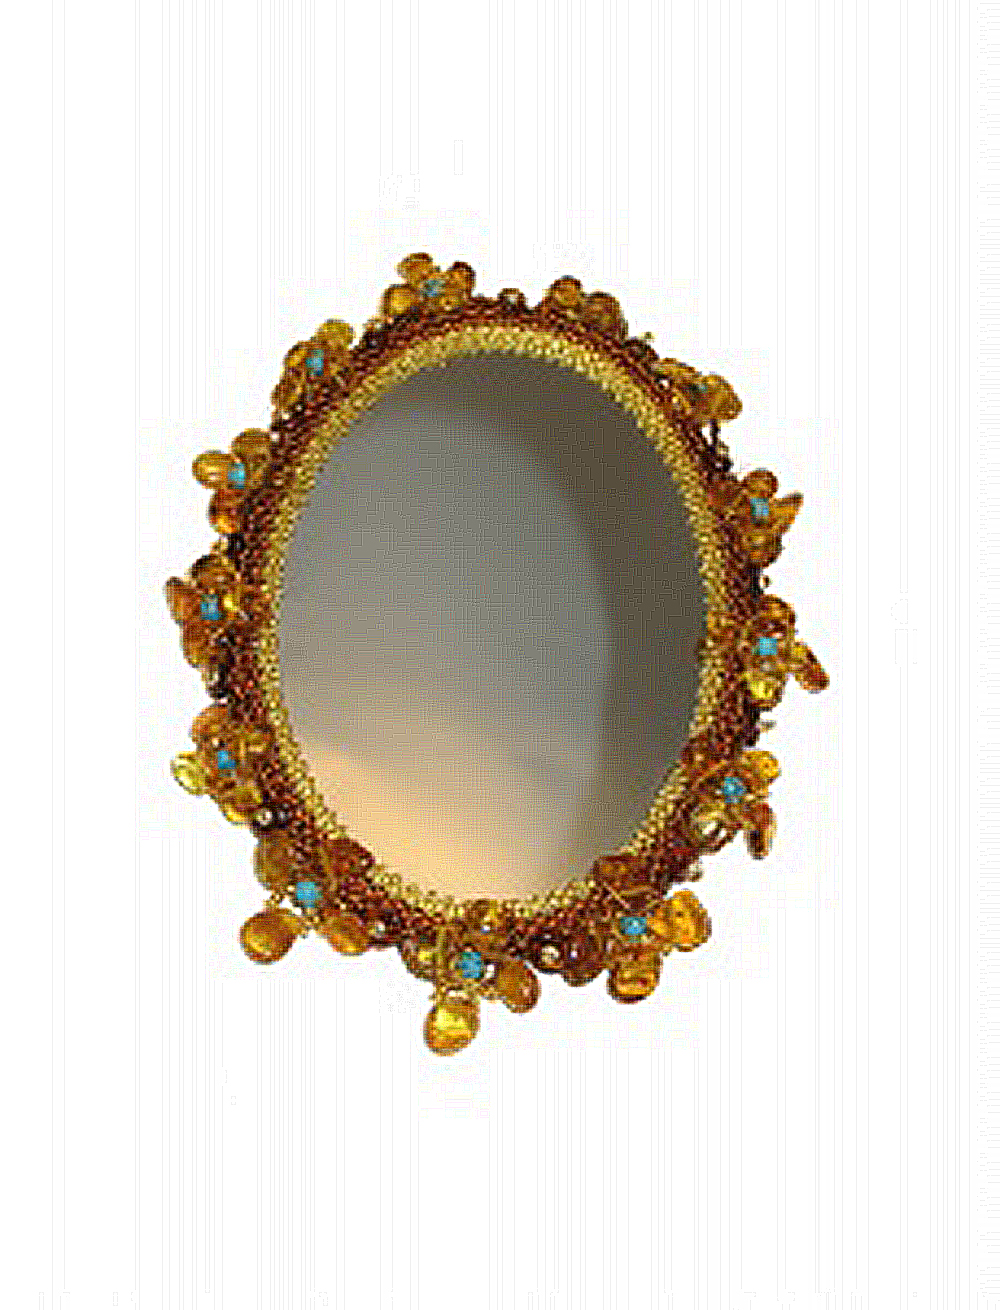 дамское зеркало из янтаря